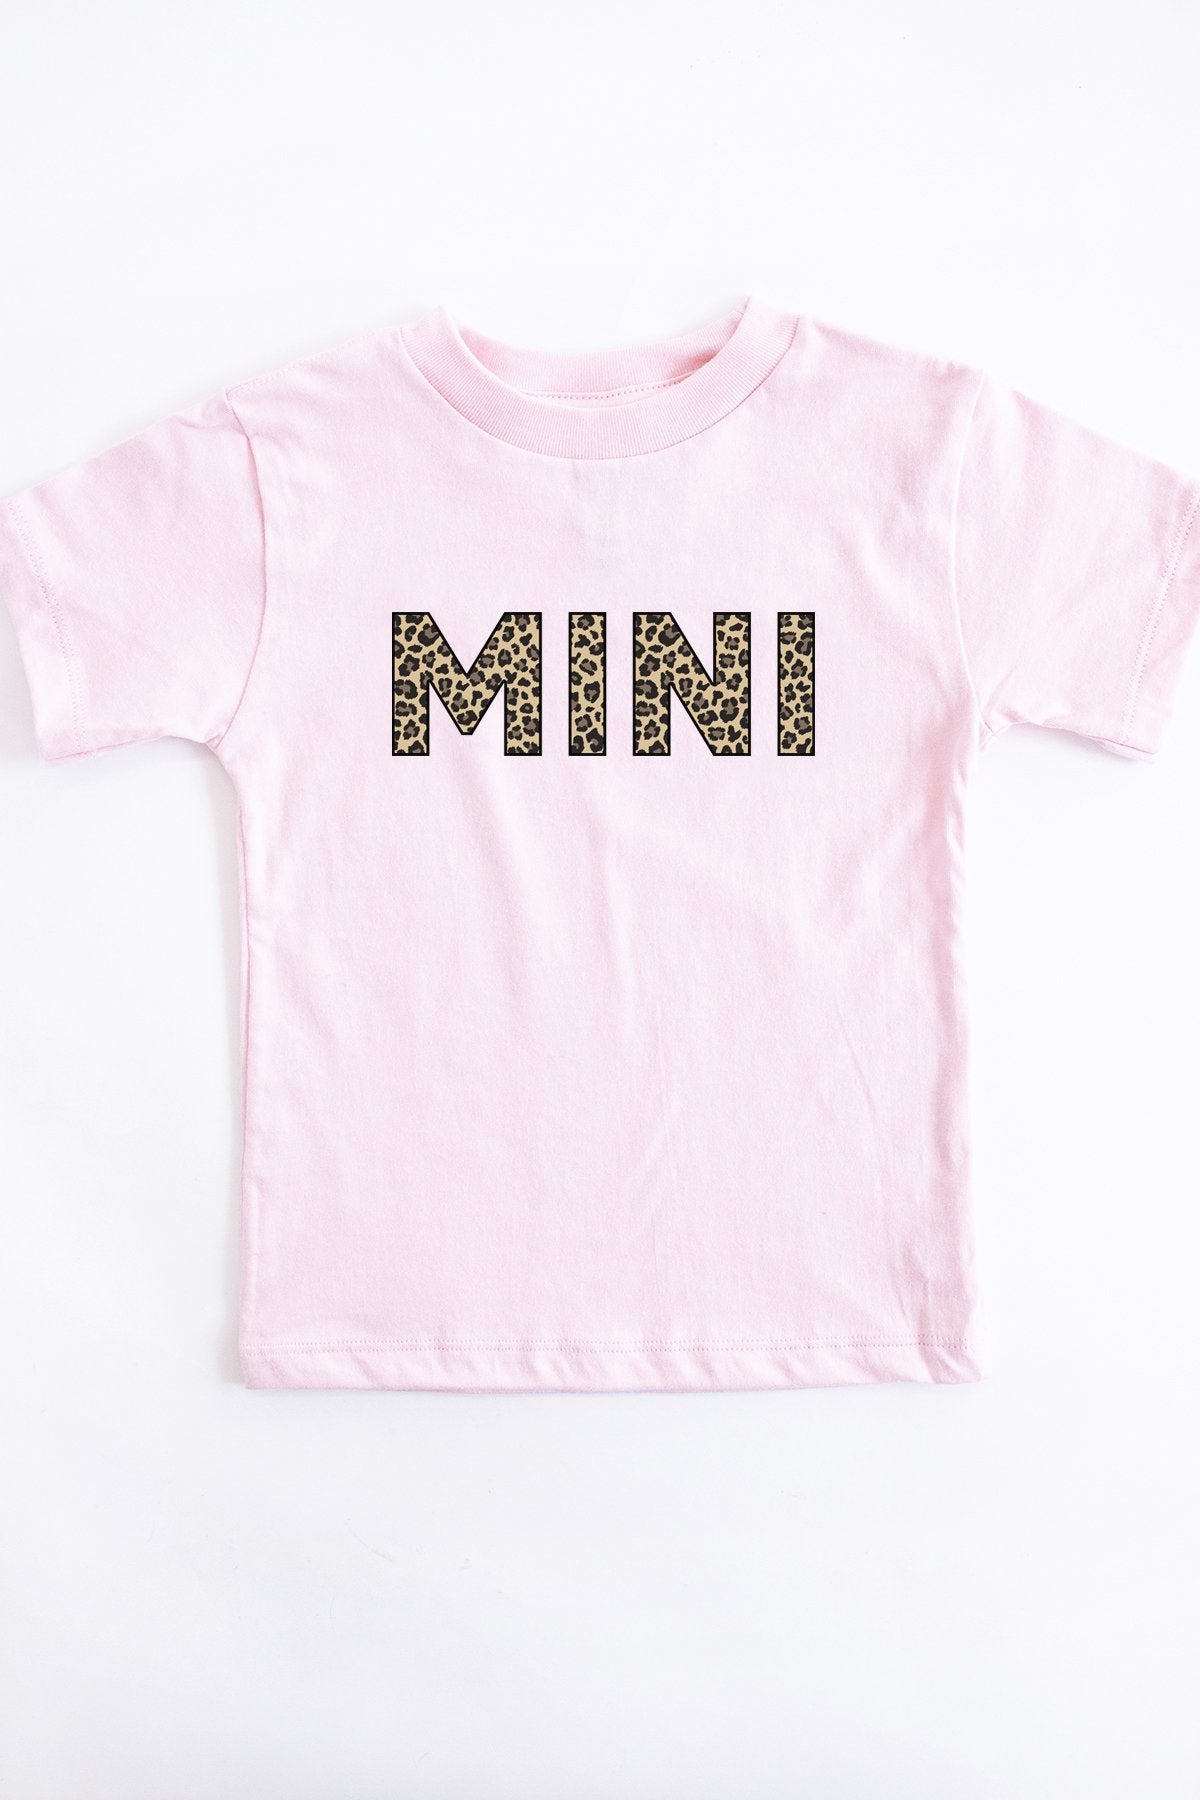 Mini Animal Print Toddler Tee Pink